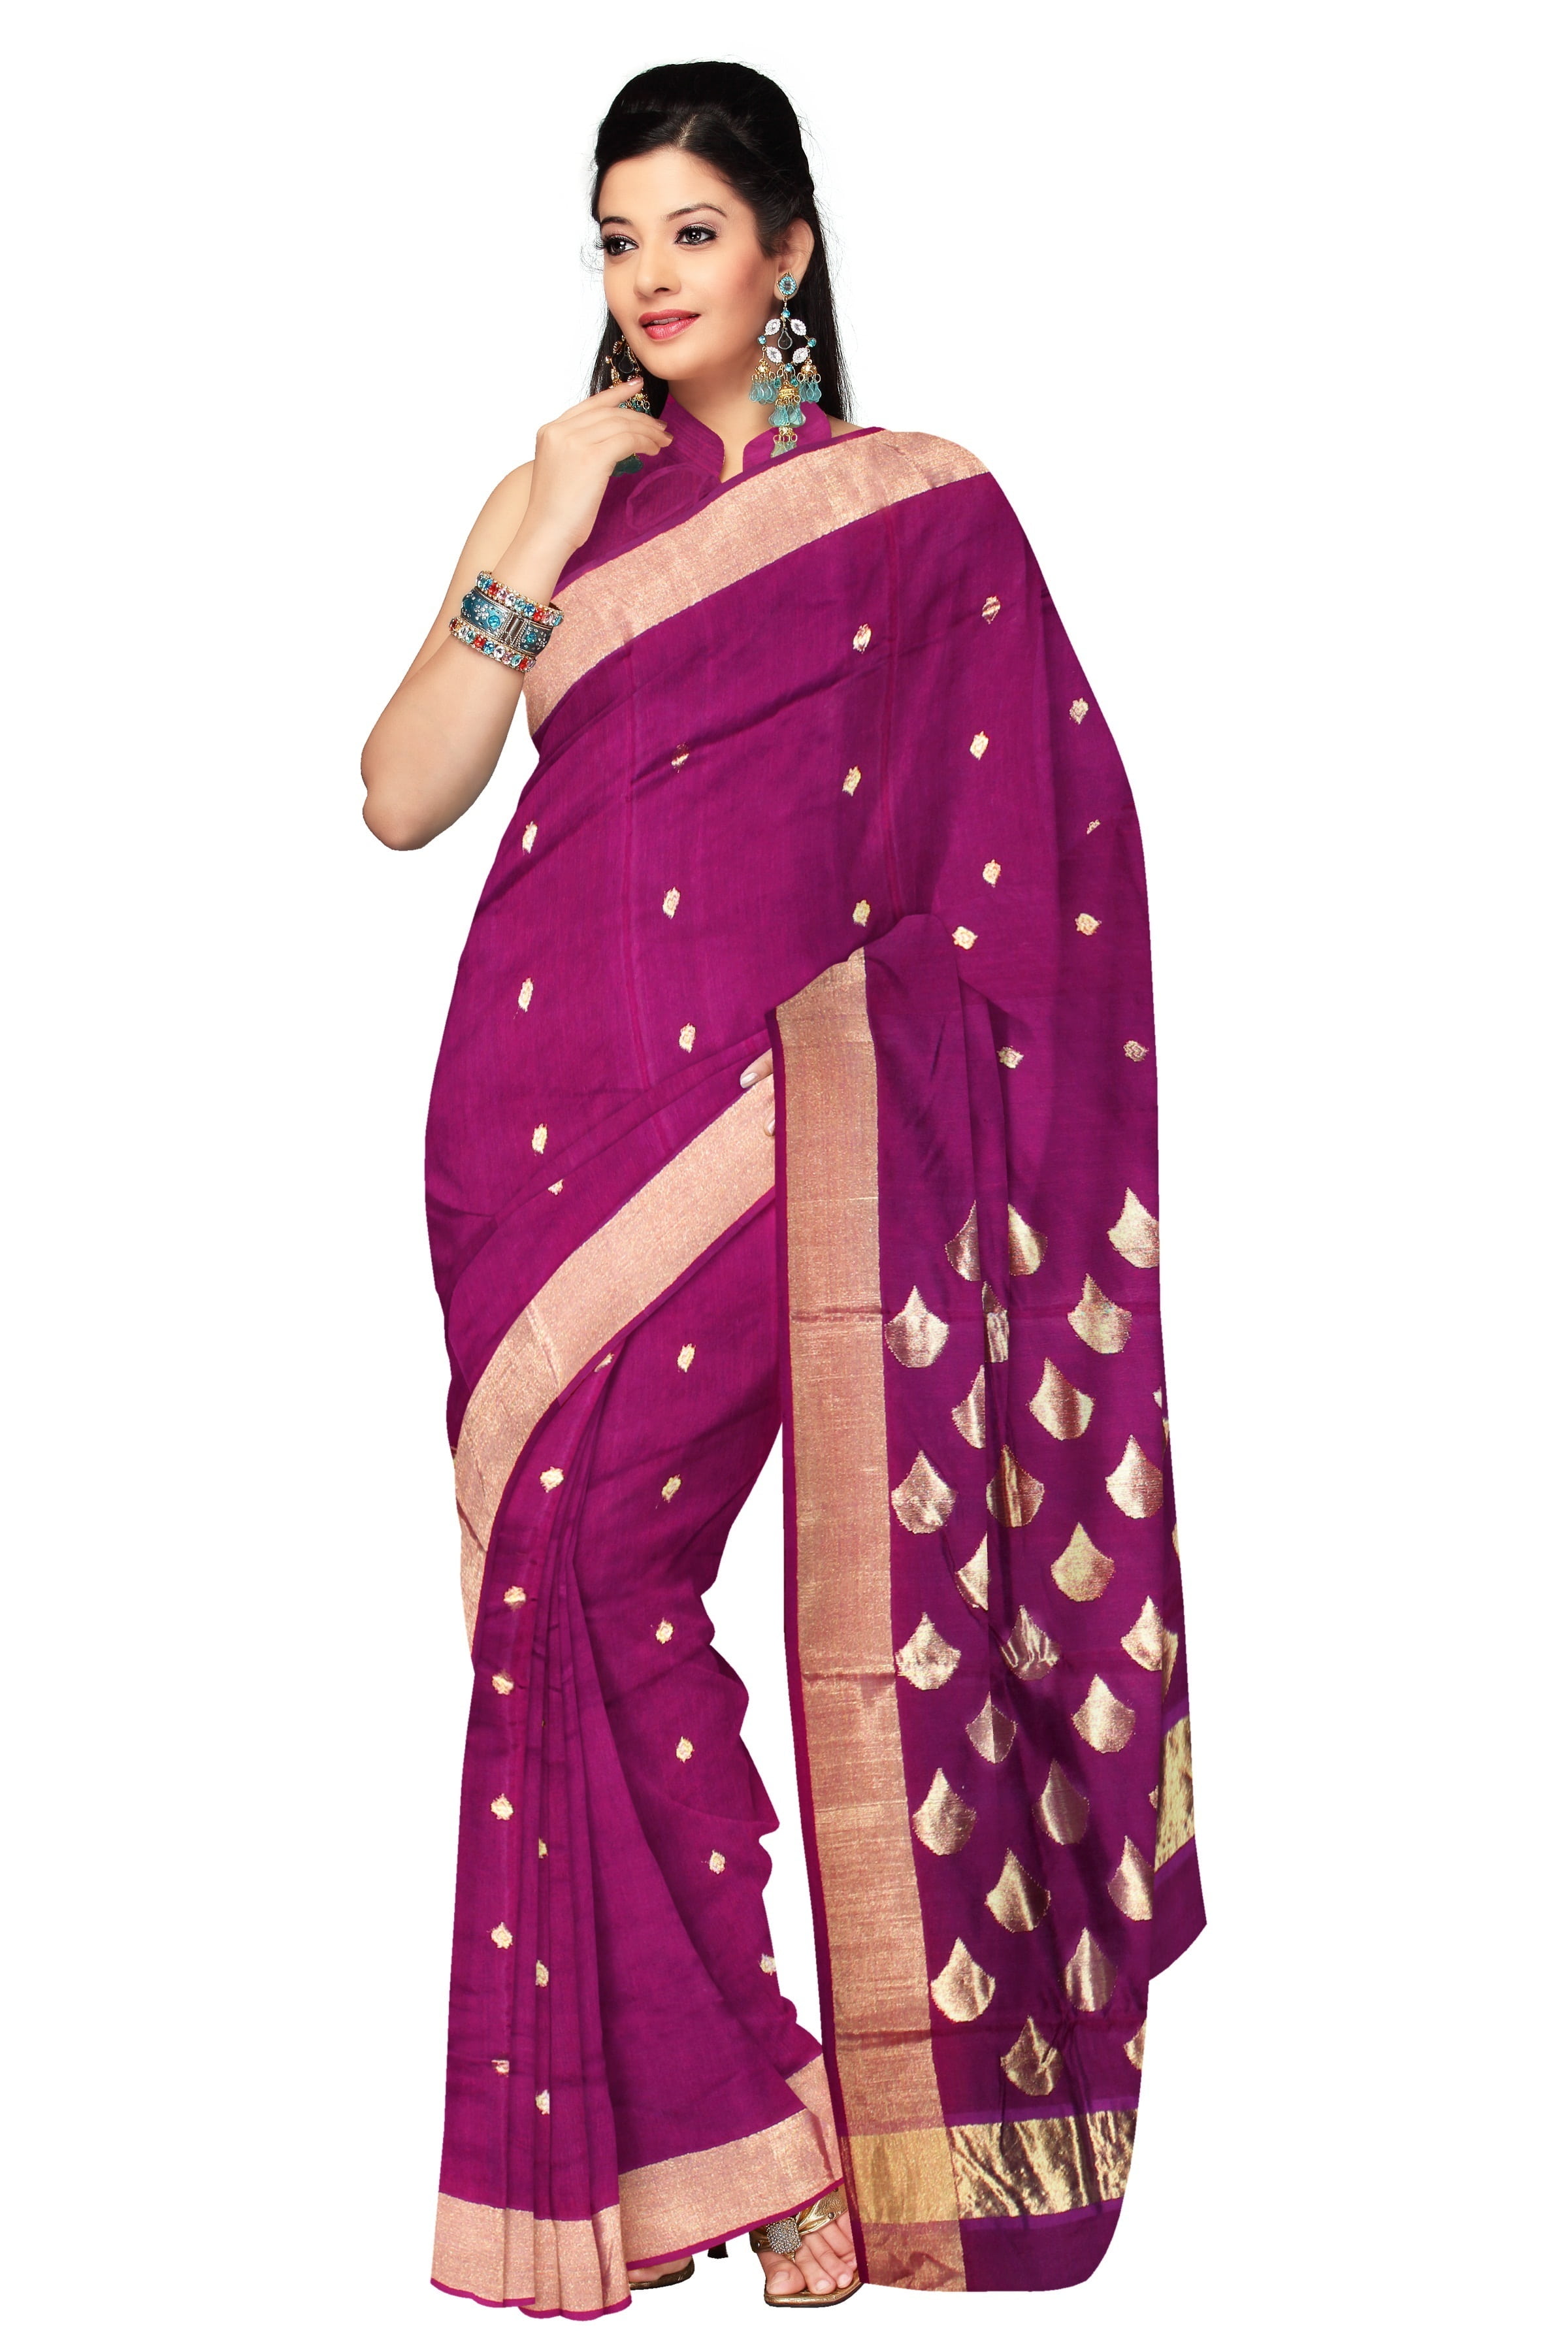 woman wearing pink sari dress, saree, fashion, silk, model, clothing